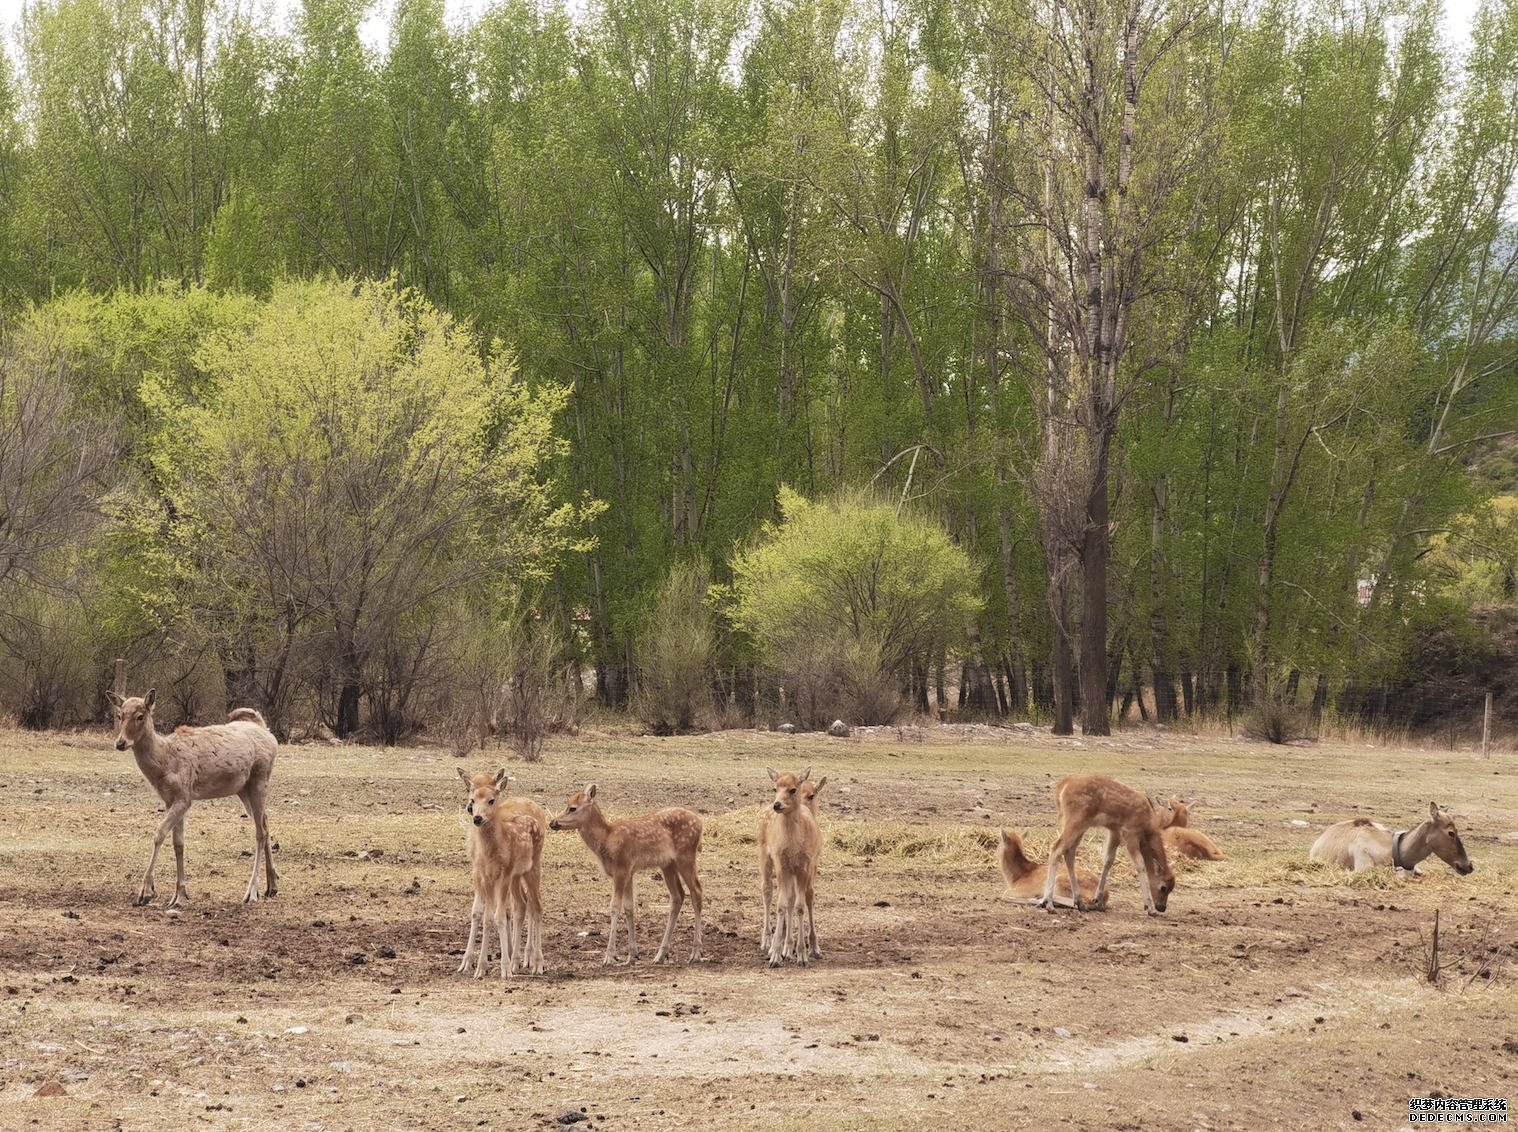 我国麋鹿放归取得阶段性成果第一代大青山野放麋鹿种群成功繁衍